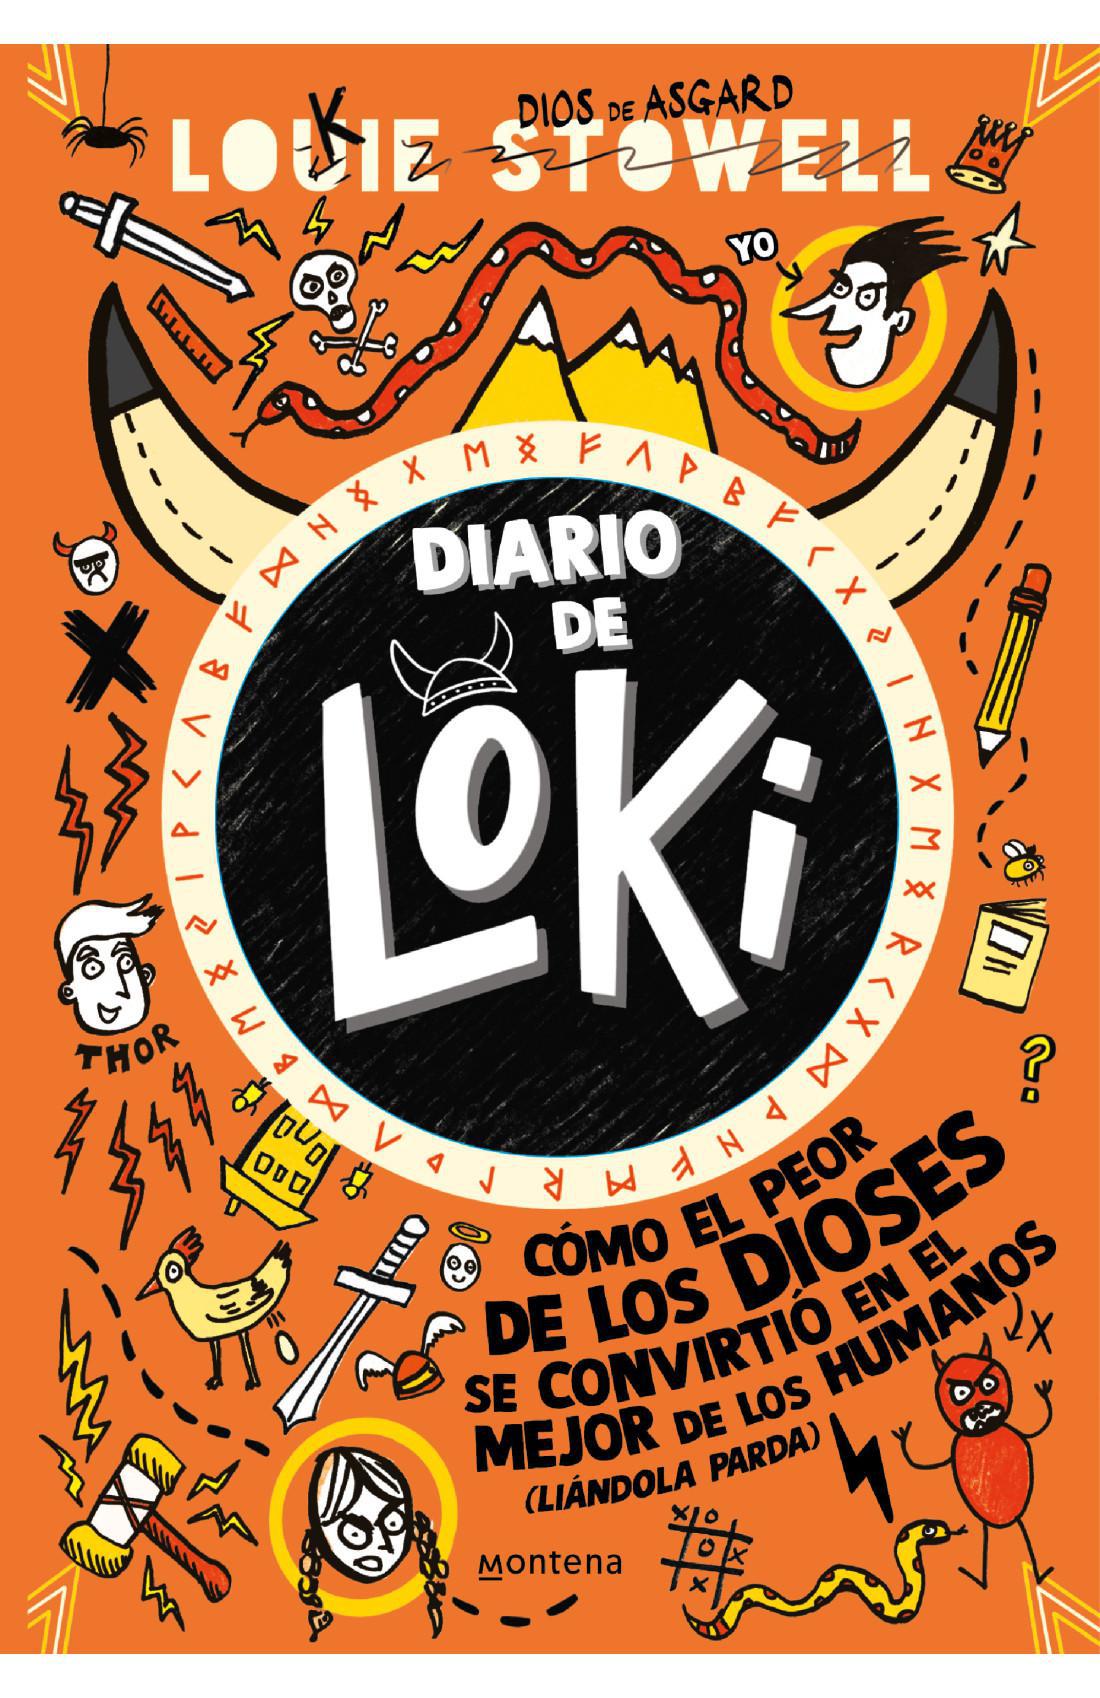 Diario de Loki 1 - Louie Stowell